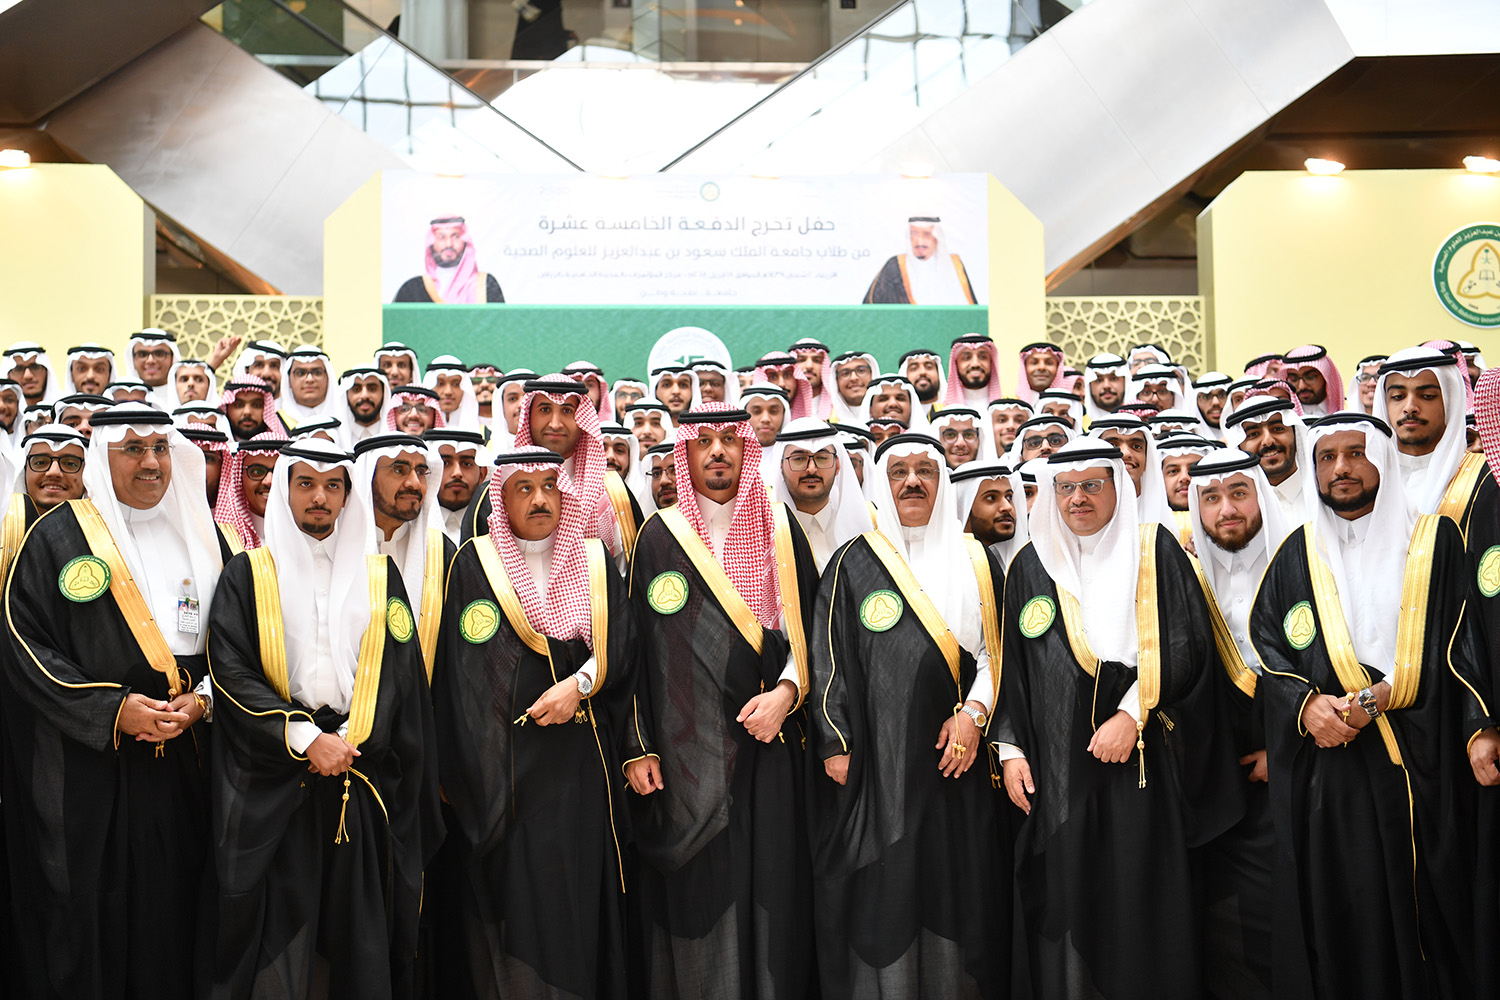 بالصور.. وزير الحرس الوطني يرعى تخريج الدفعة الـ 15 من طلاب جامعة الملك سعود بن عبدالعزيز للعلوم الصحية